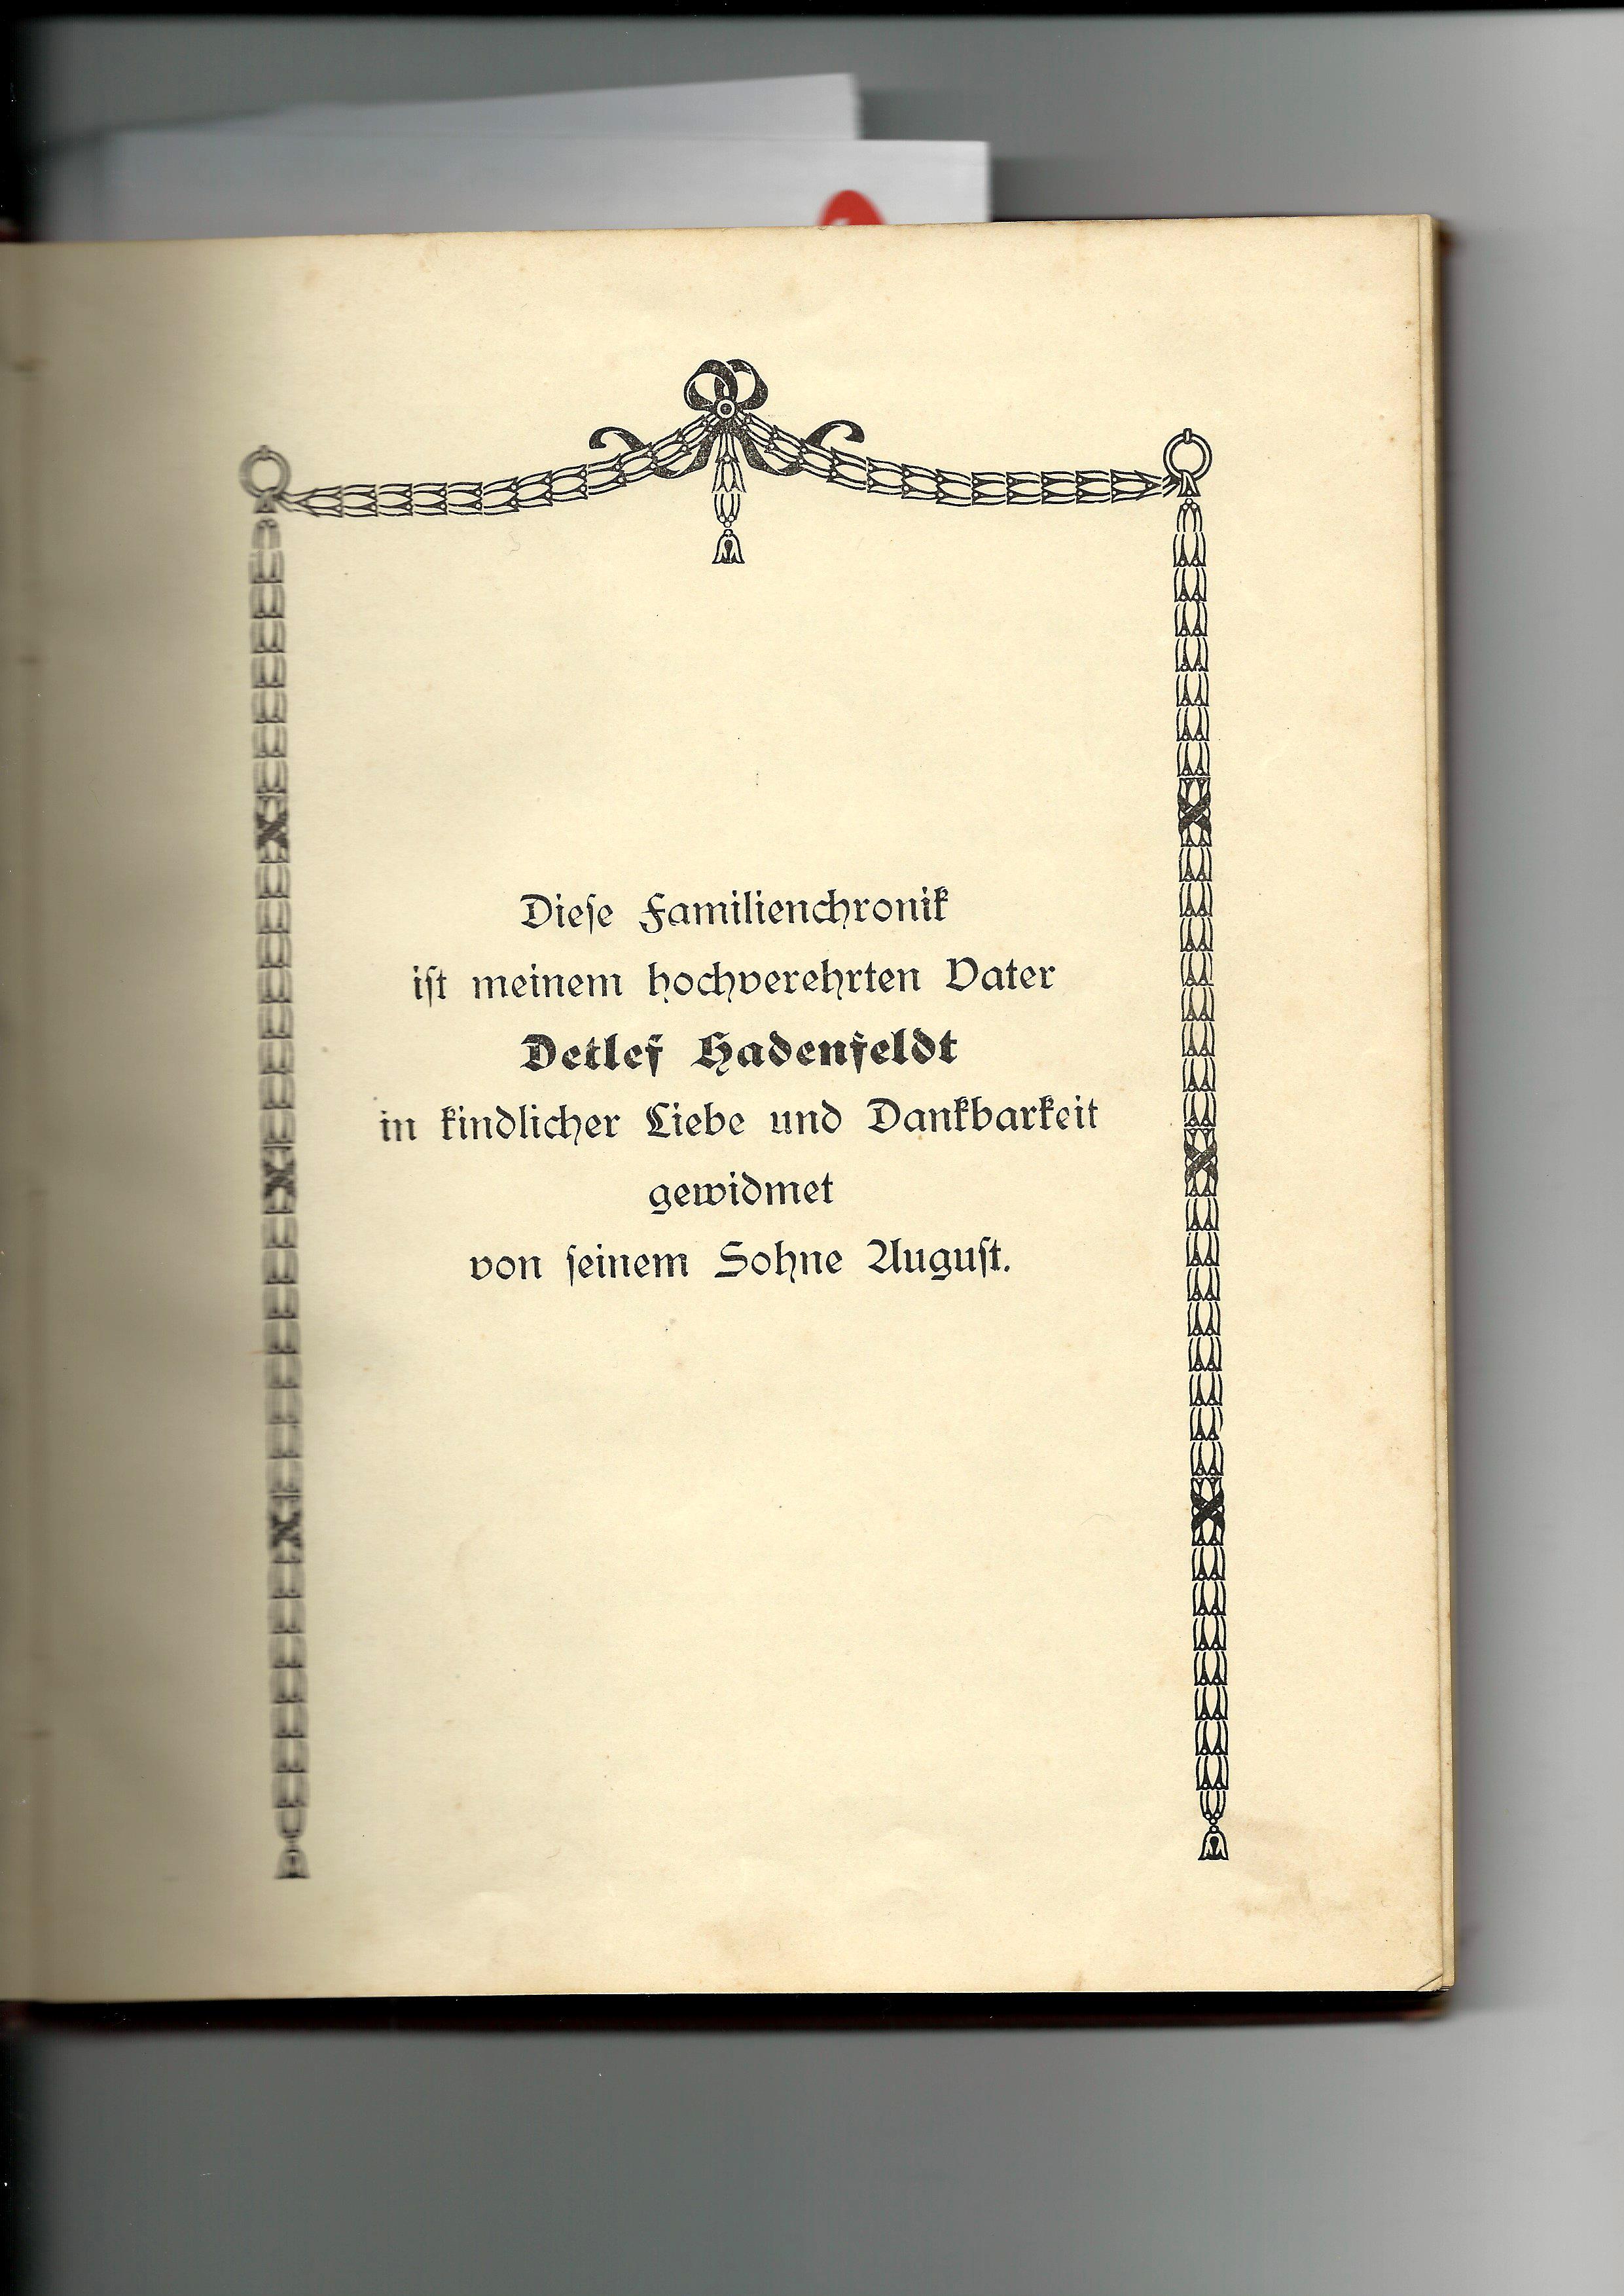 Chronik Hadenfeldt von 1922